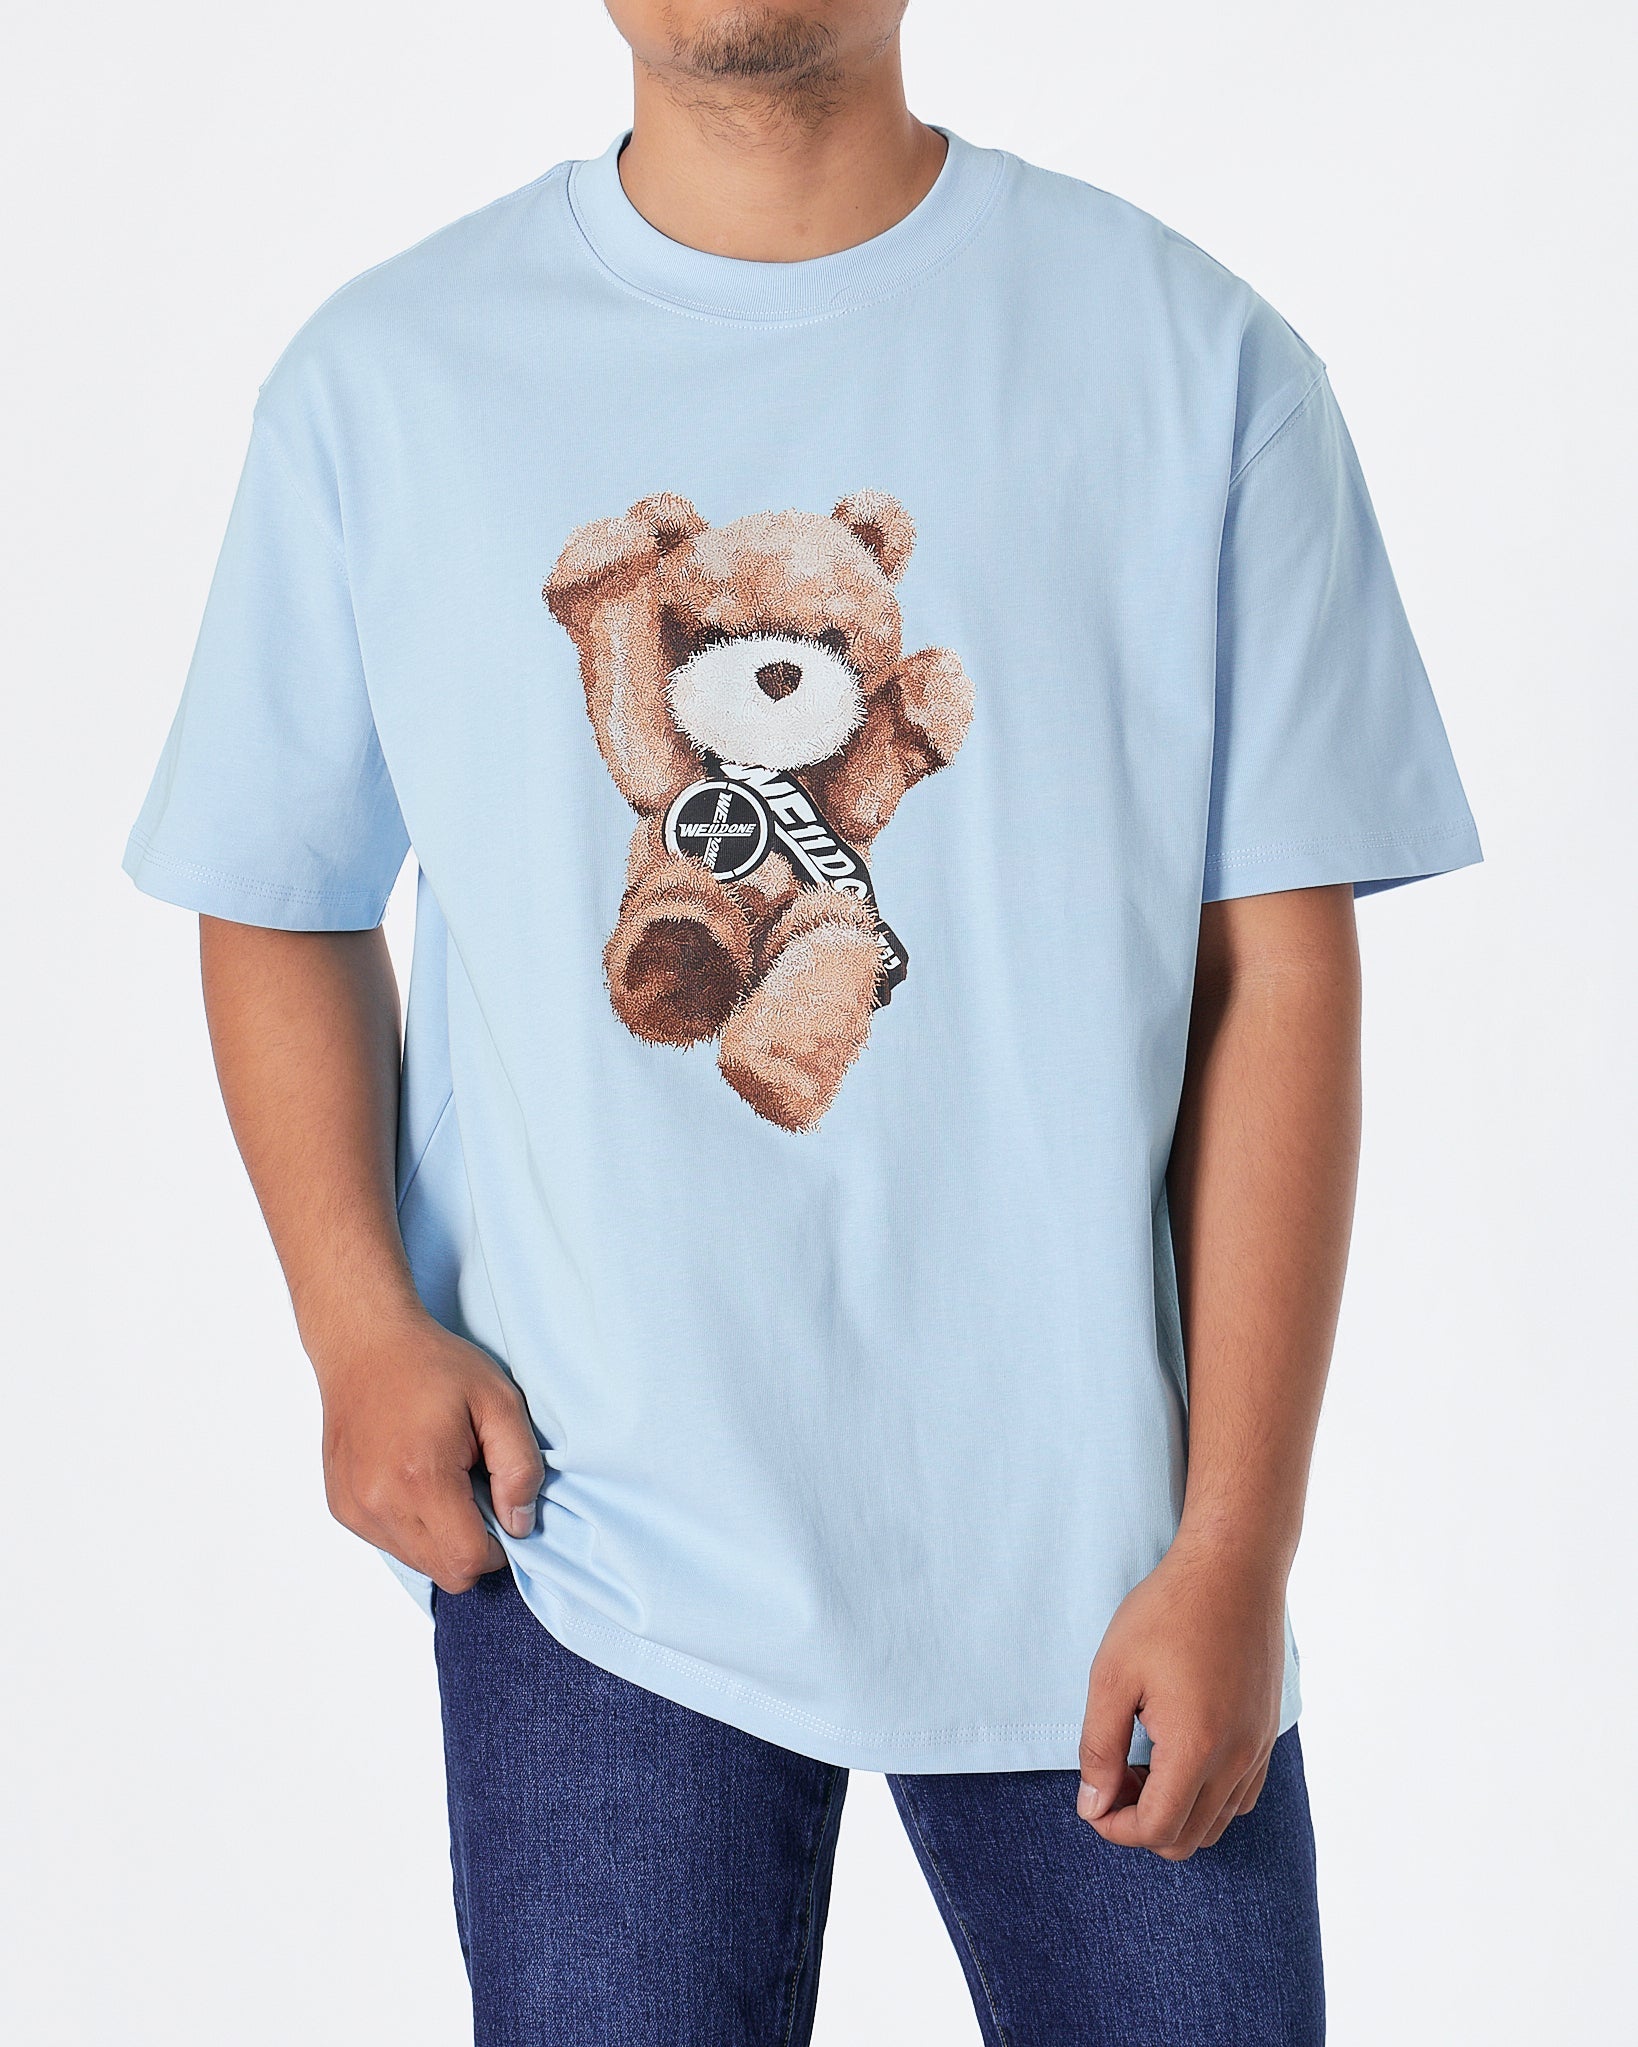 MOI OUTFIT-WE1 Teddy Bear Unisex Blue T-Shirt 24.90